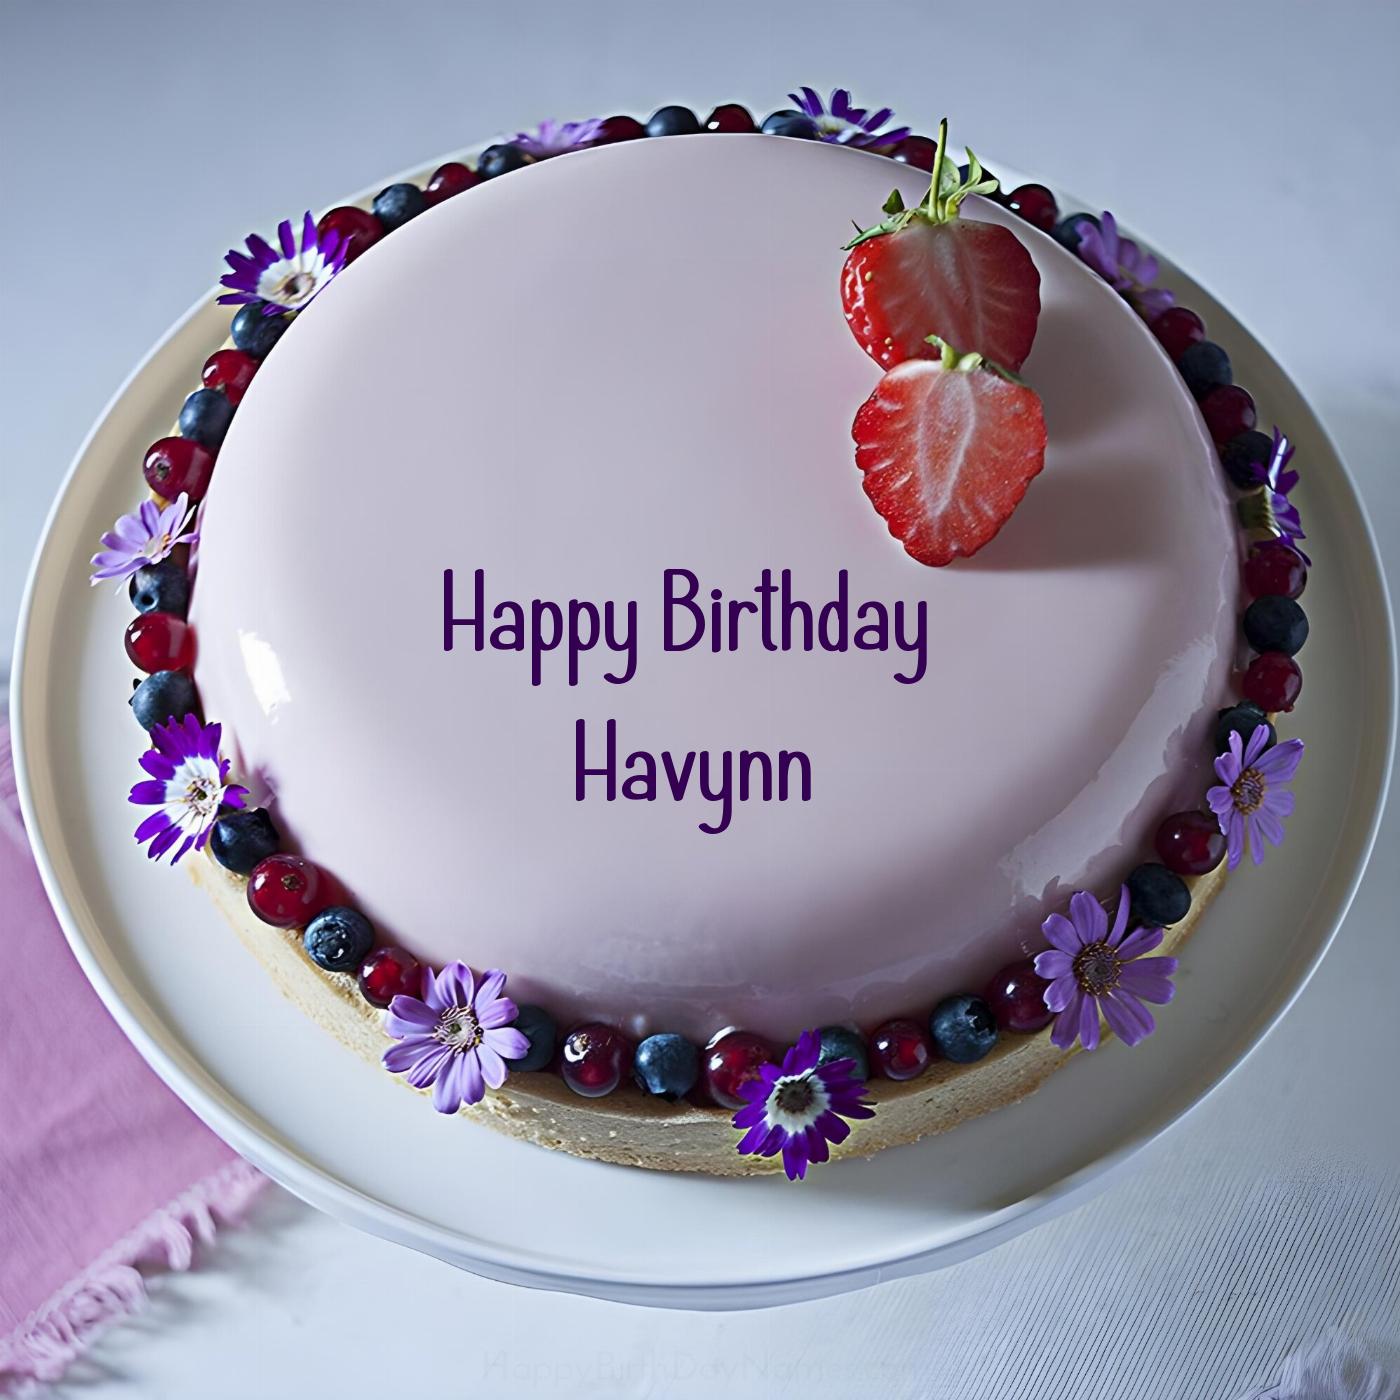 Happy Birthday Havynn Strawberry Flowers Cake